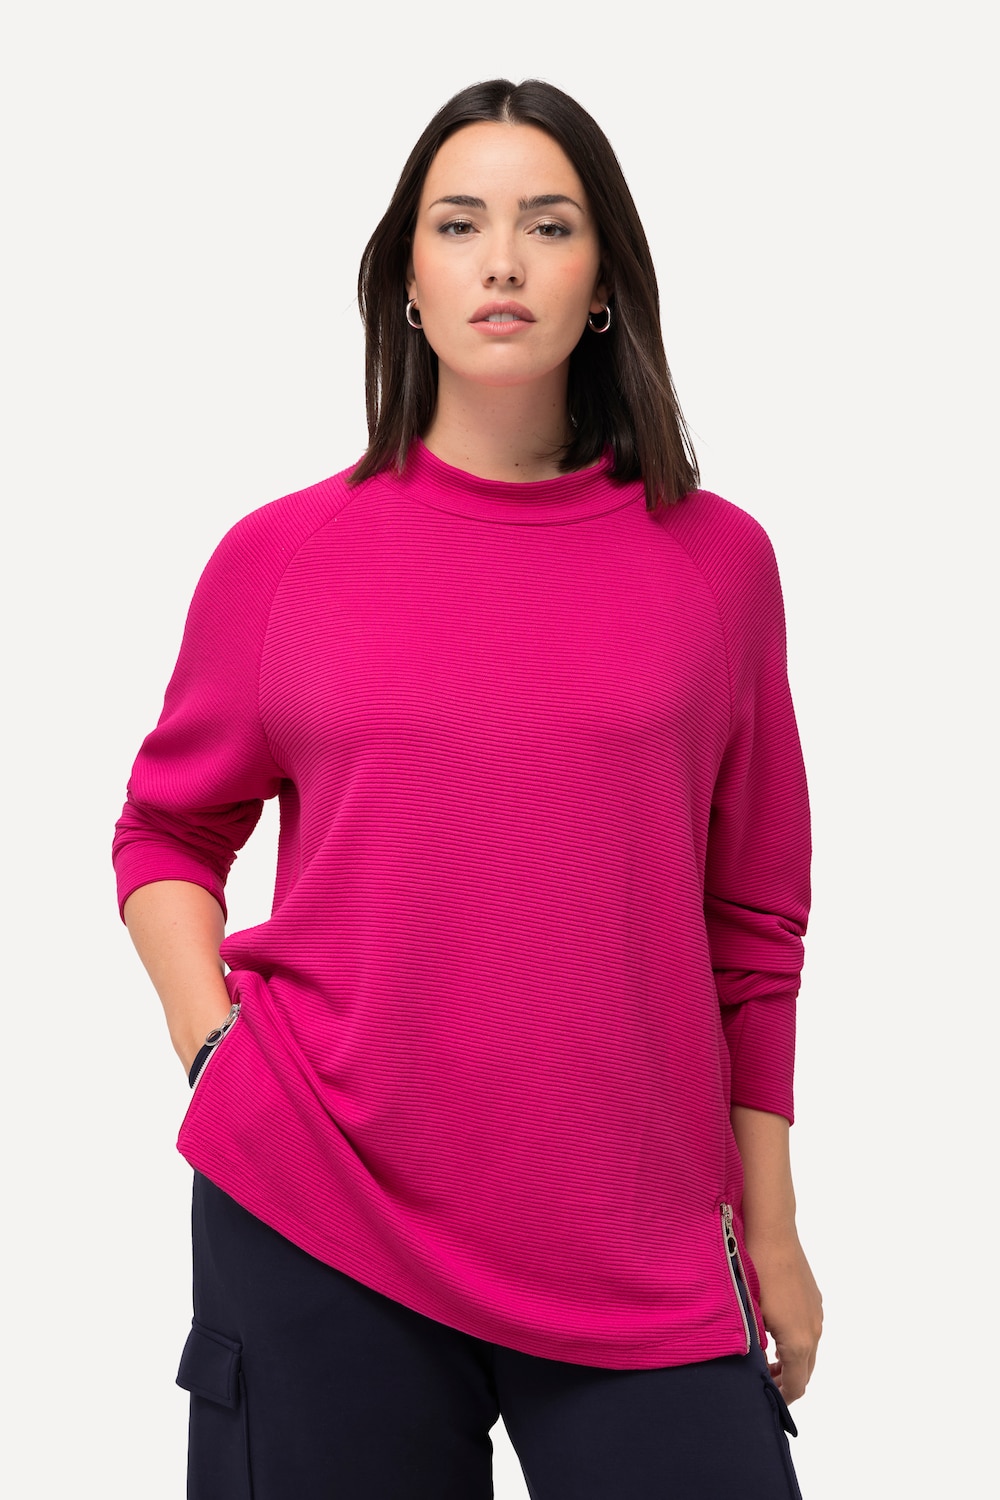 Grote Maten sweatshirt, Dames, roze, Maat: 54/56, Viscose/Polyester, Ulla Popken